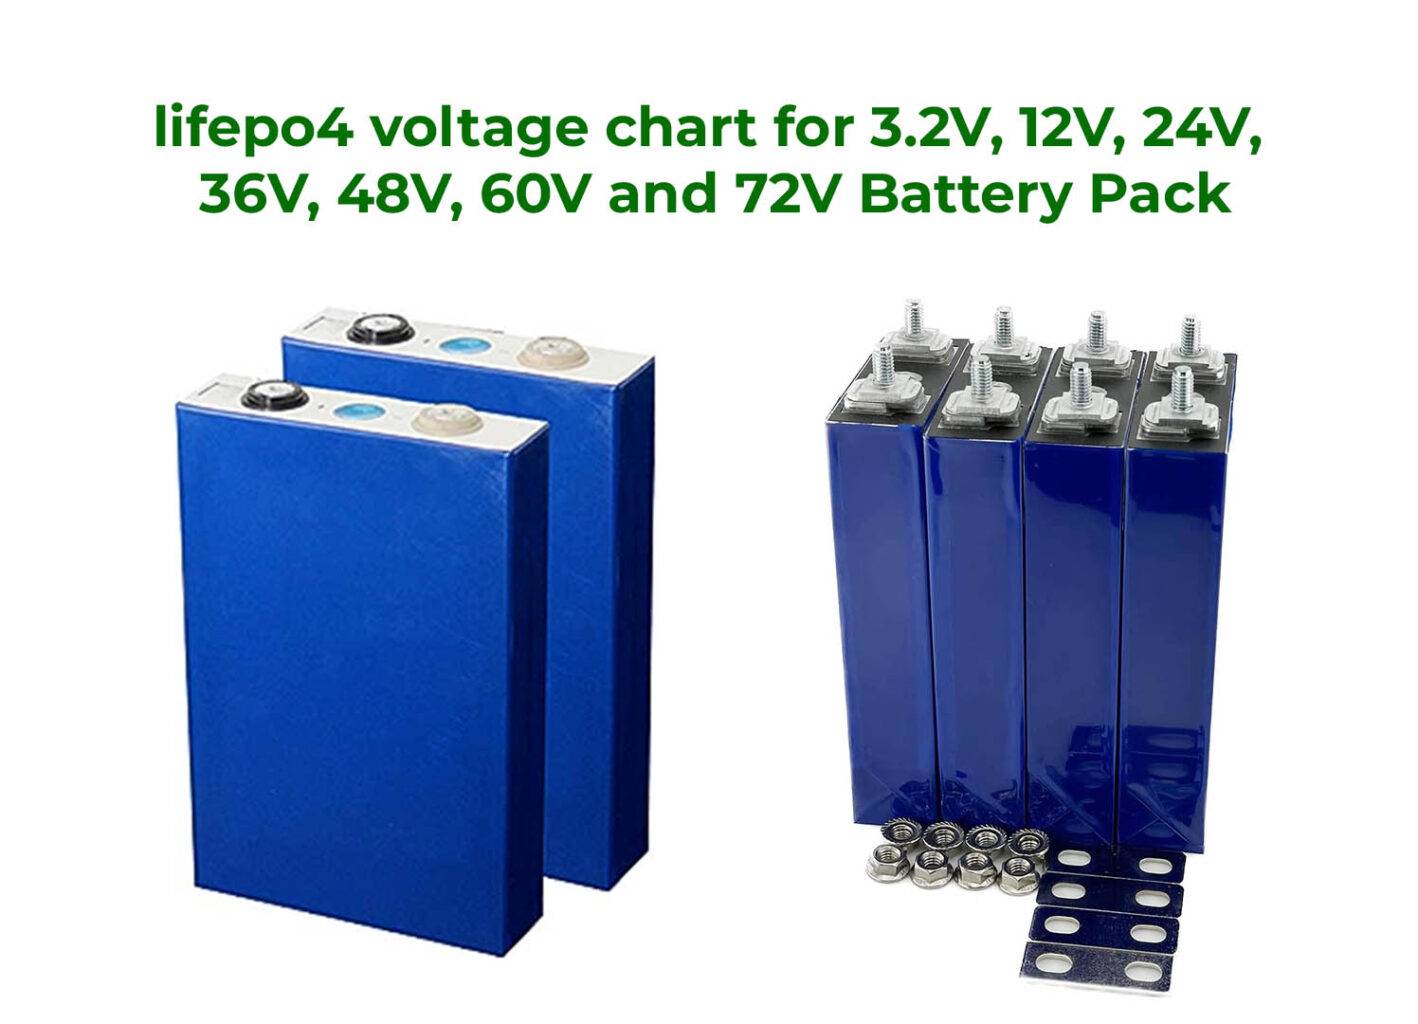 lifepo4 voltage chart 3.2V, 12V, 24V, 36V, 48V, 60V, 72V and more. Battery Wheel